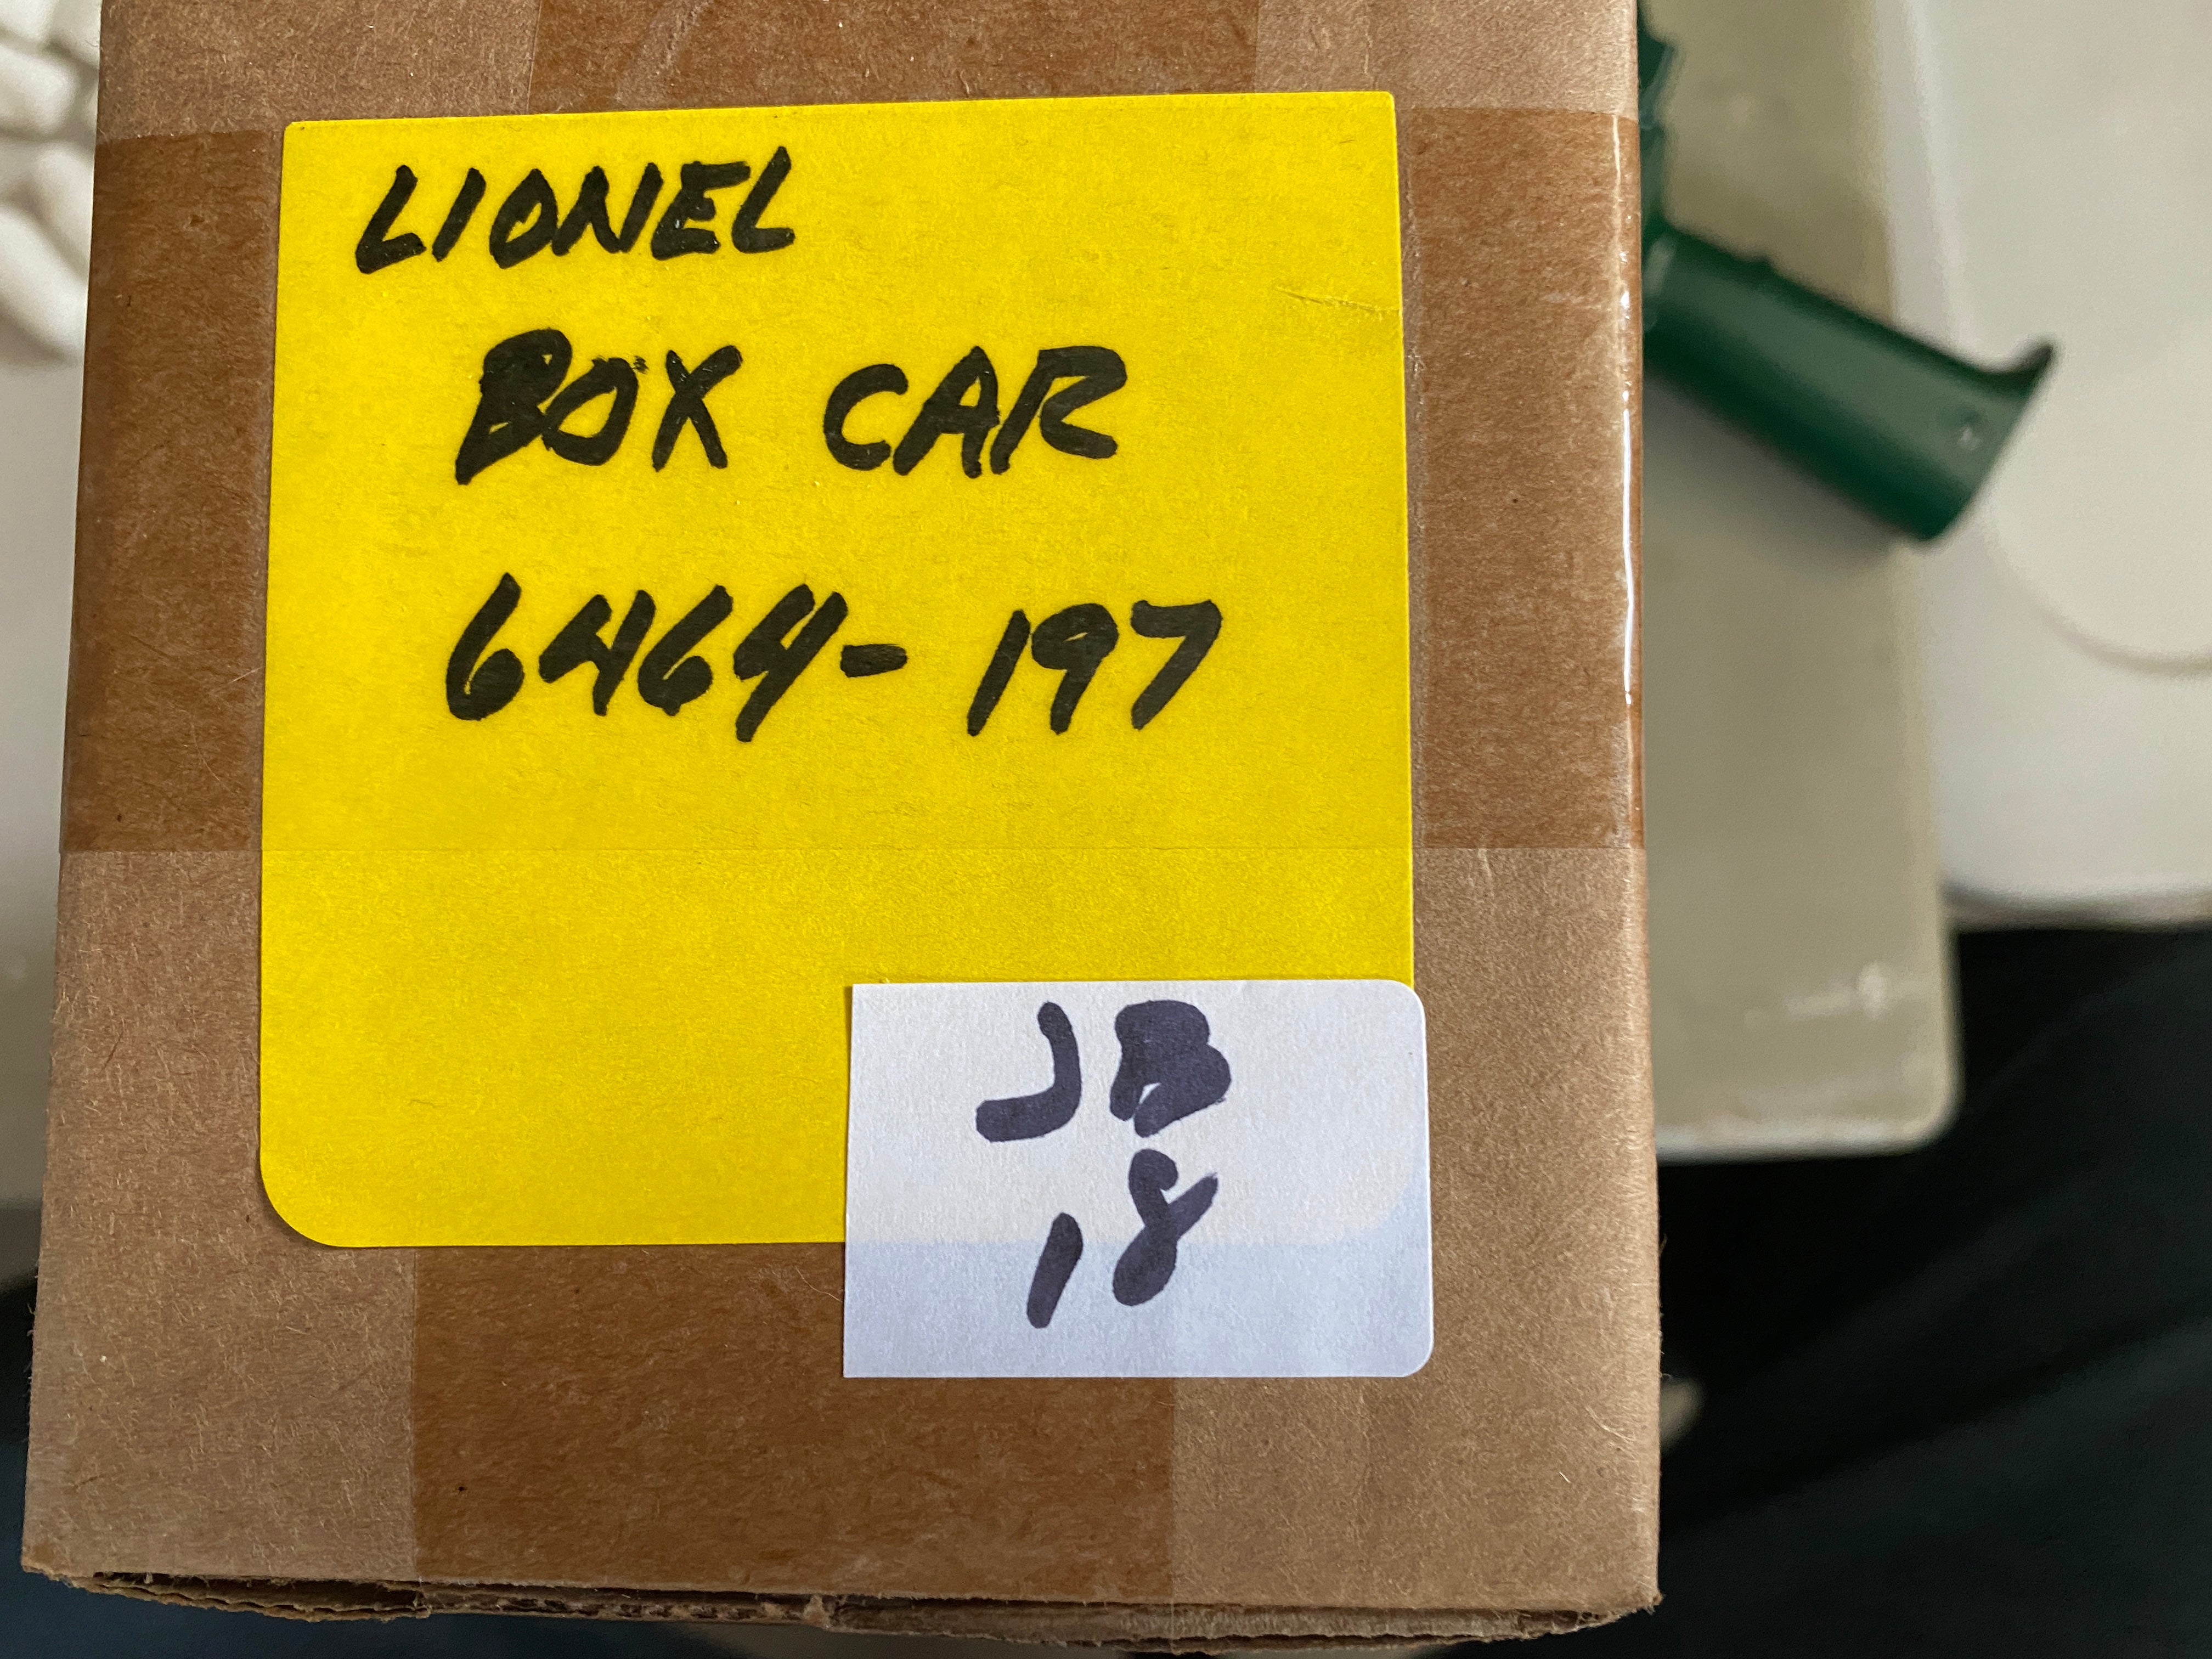 Lionel 6-19289 - Box Car "Monon" #6464-197 - Second Hand